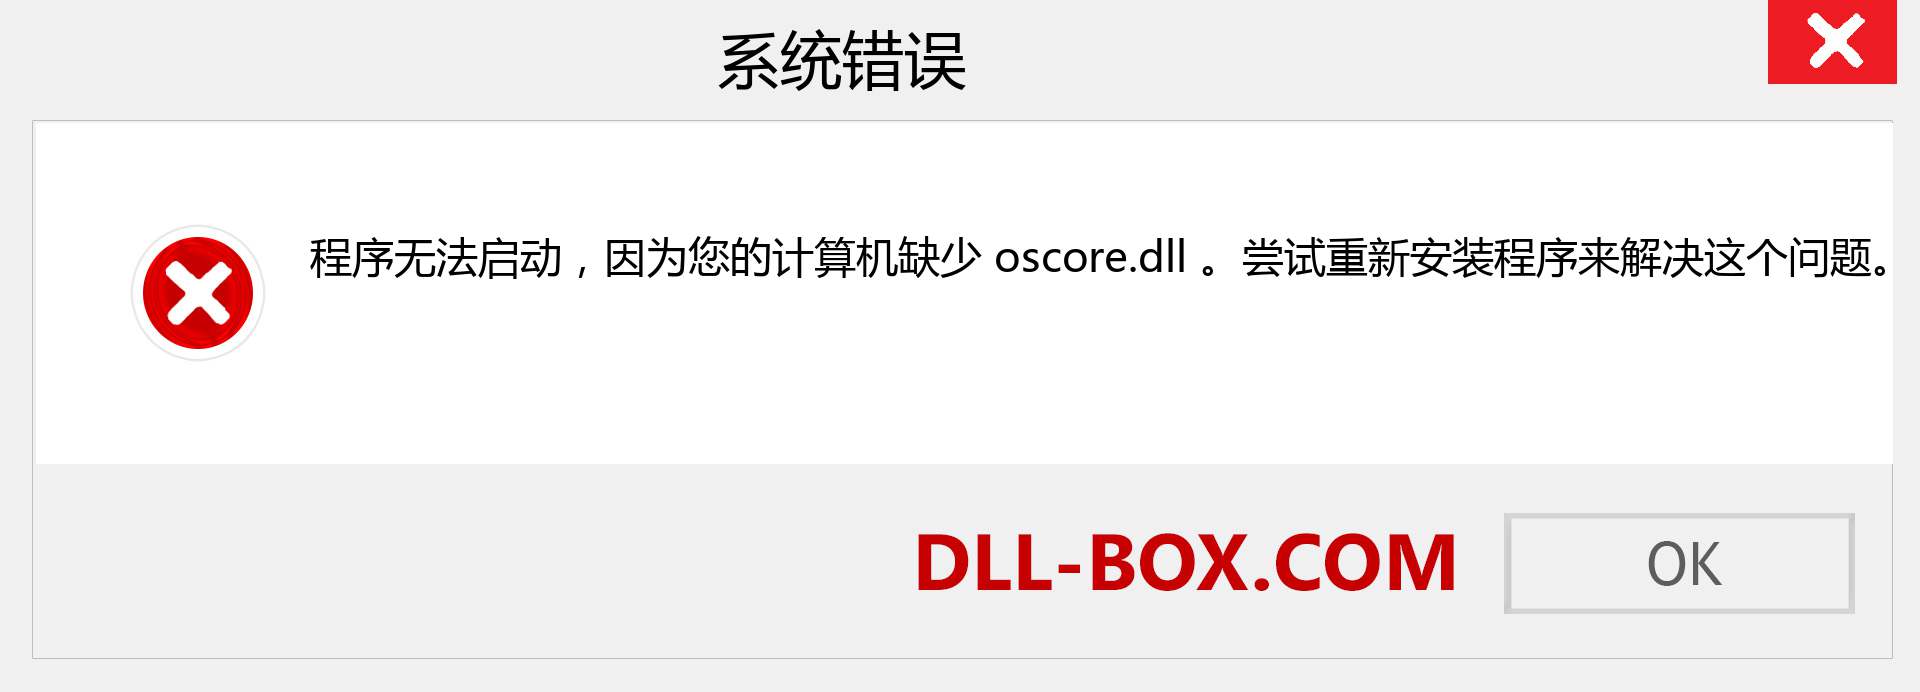 oscore.dll 文件丢失？。 适用于 Windows 7、8、10 的下载 - 修复 Windows、照片、图像上的 oscore dll 丢失错误